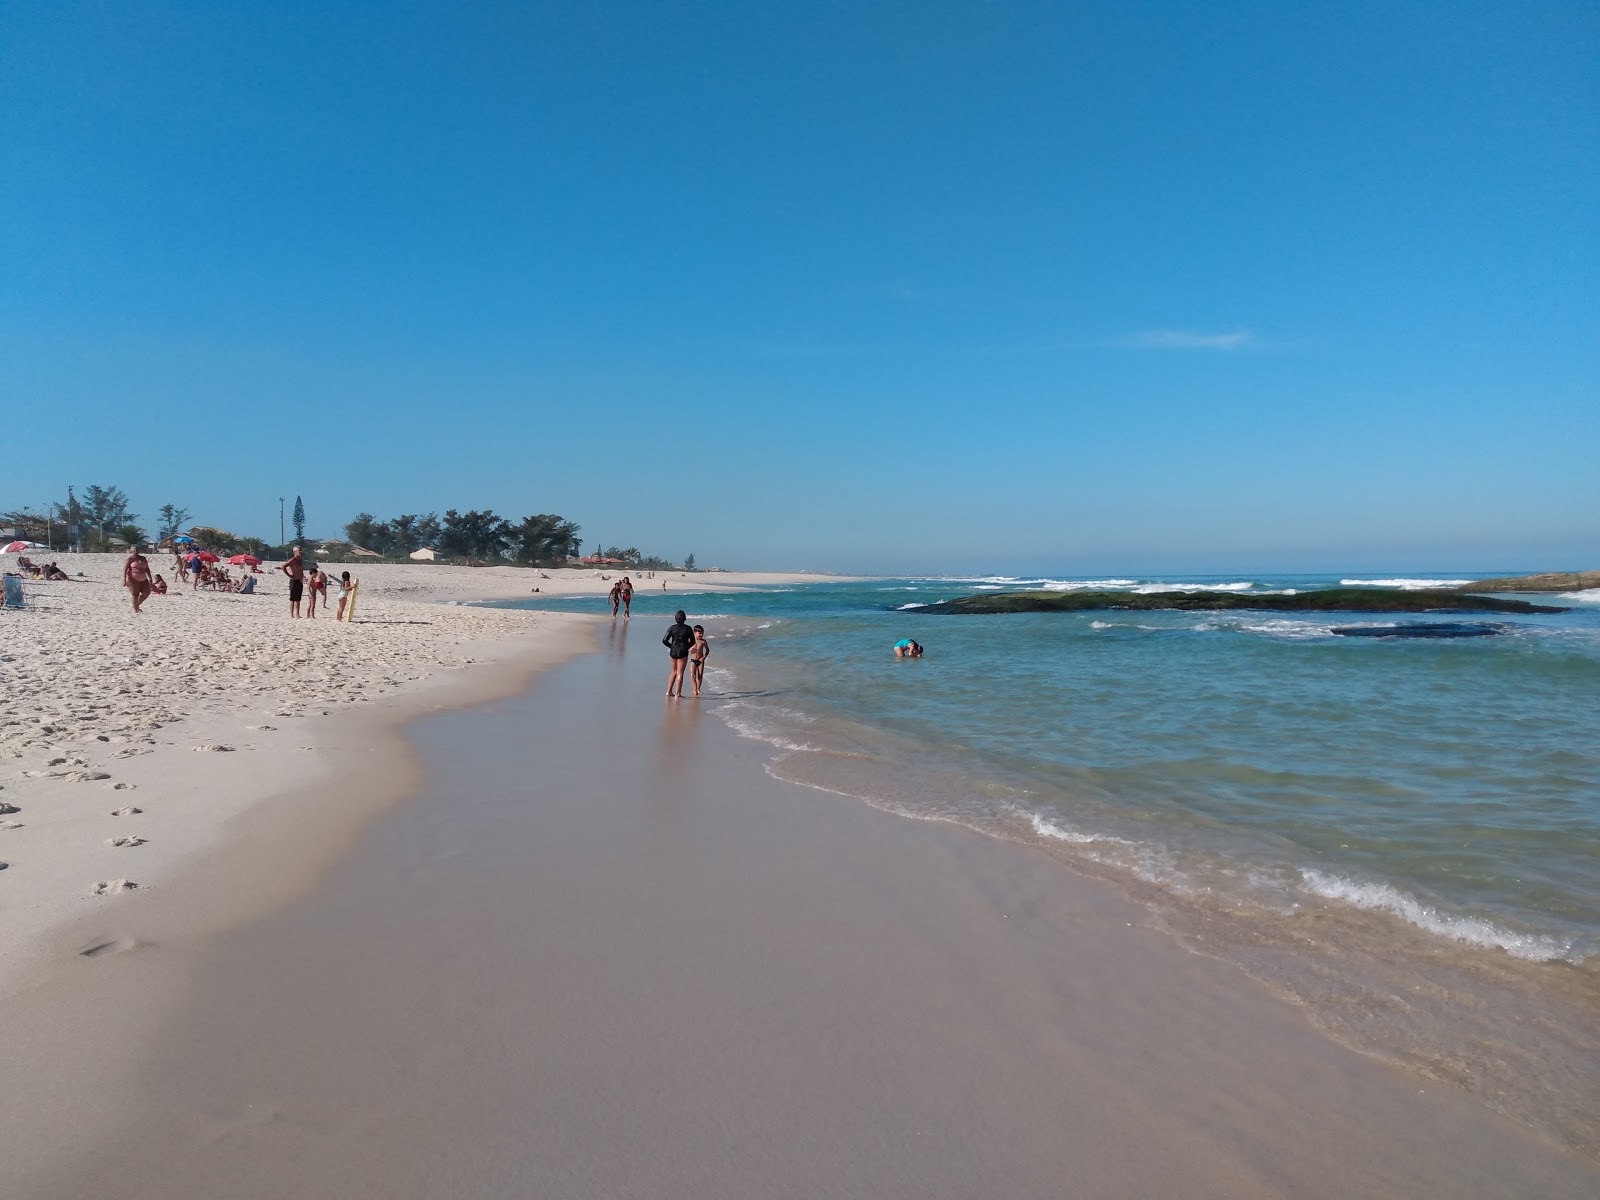 Praia de Itauna'in fotoğrafı parlak ince kum yüzey ile